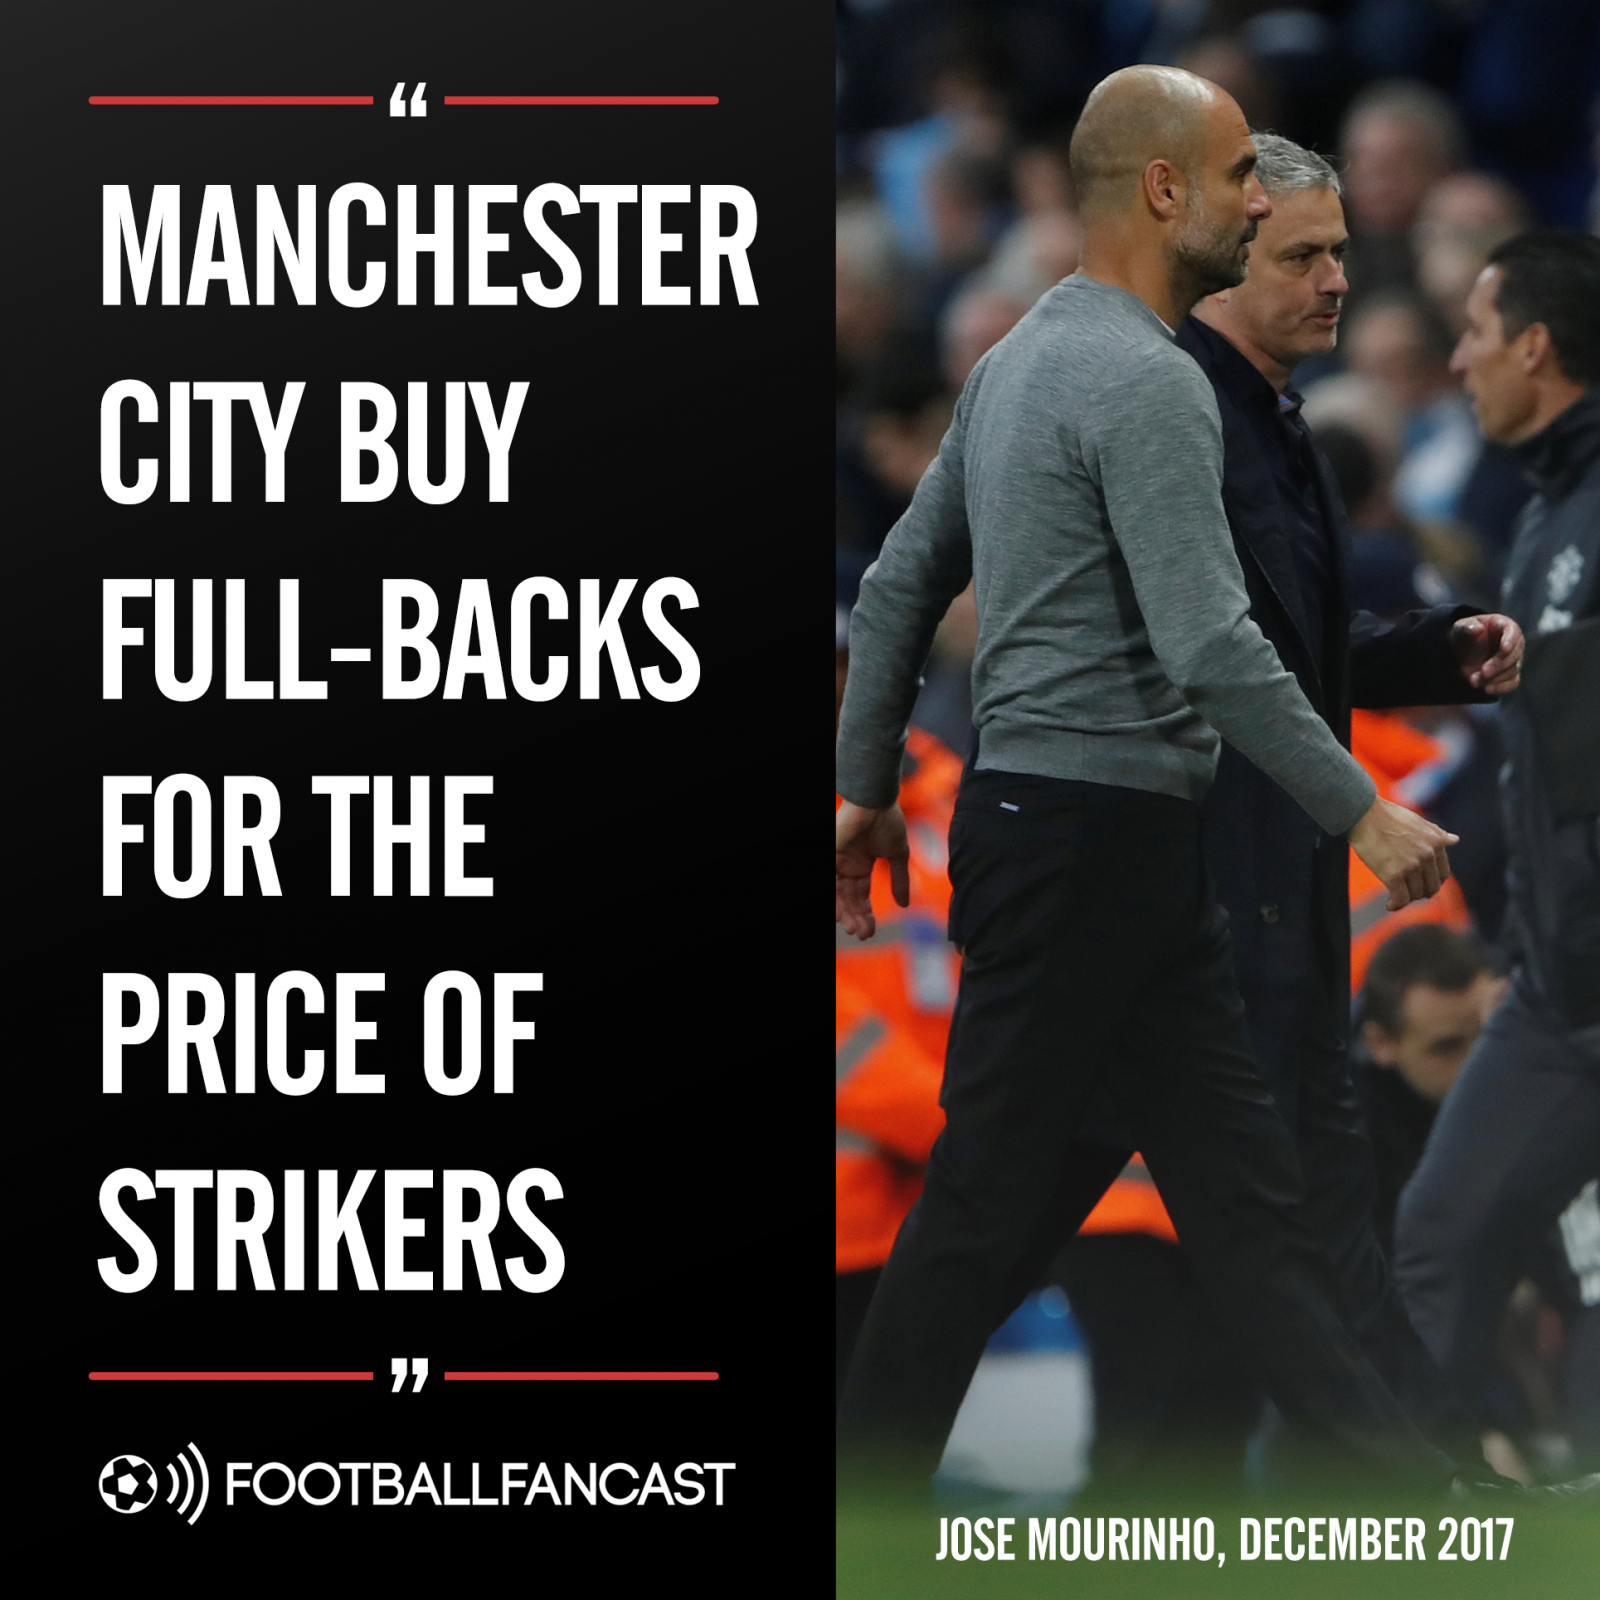 Jose Mourinho discusses Manchester City's spending